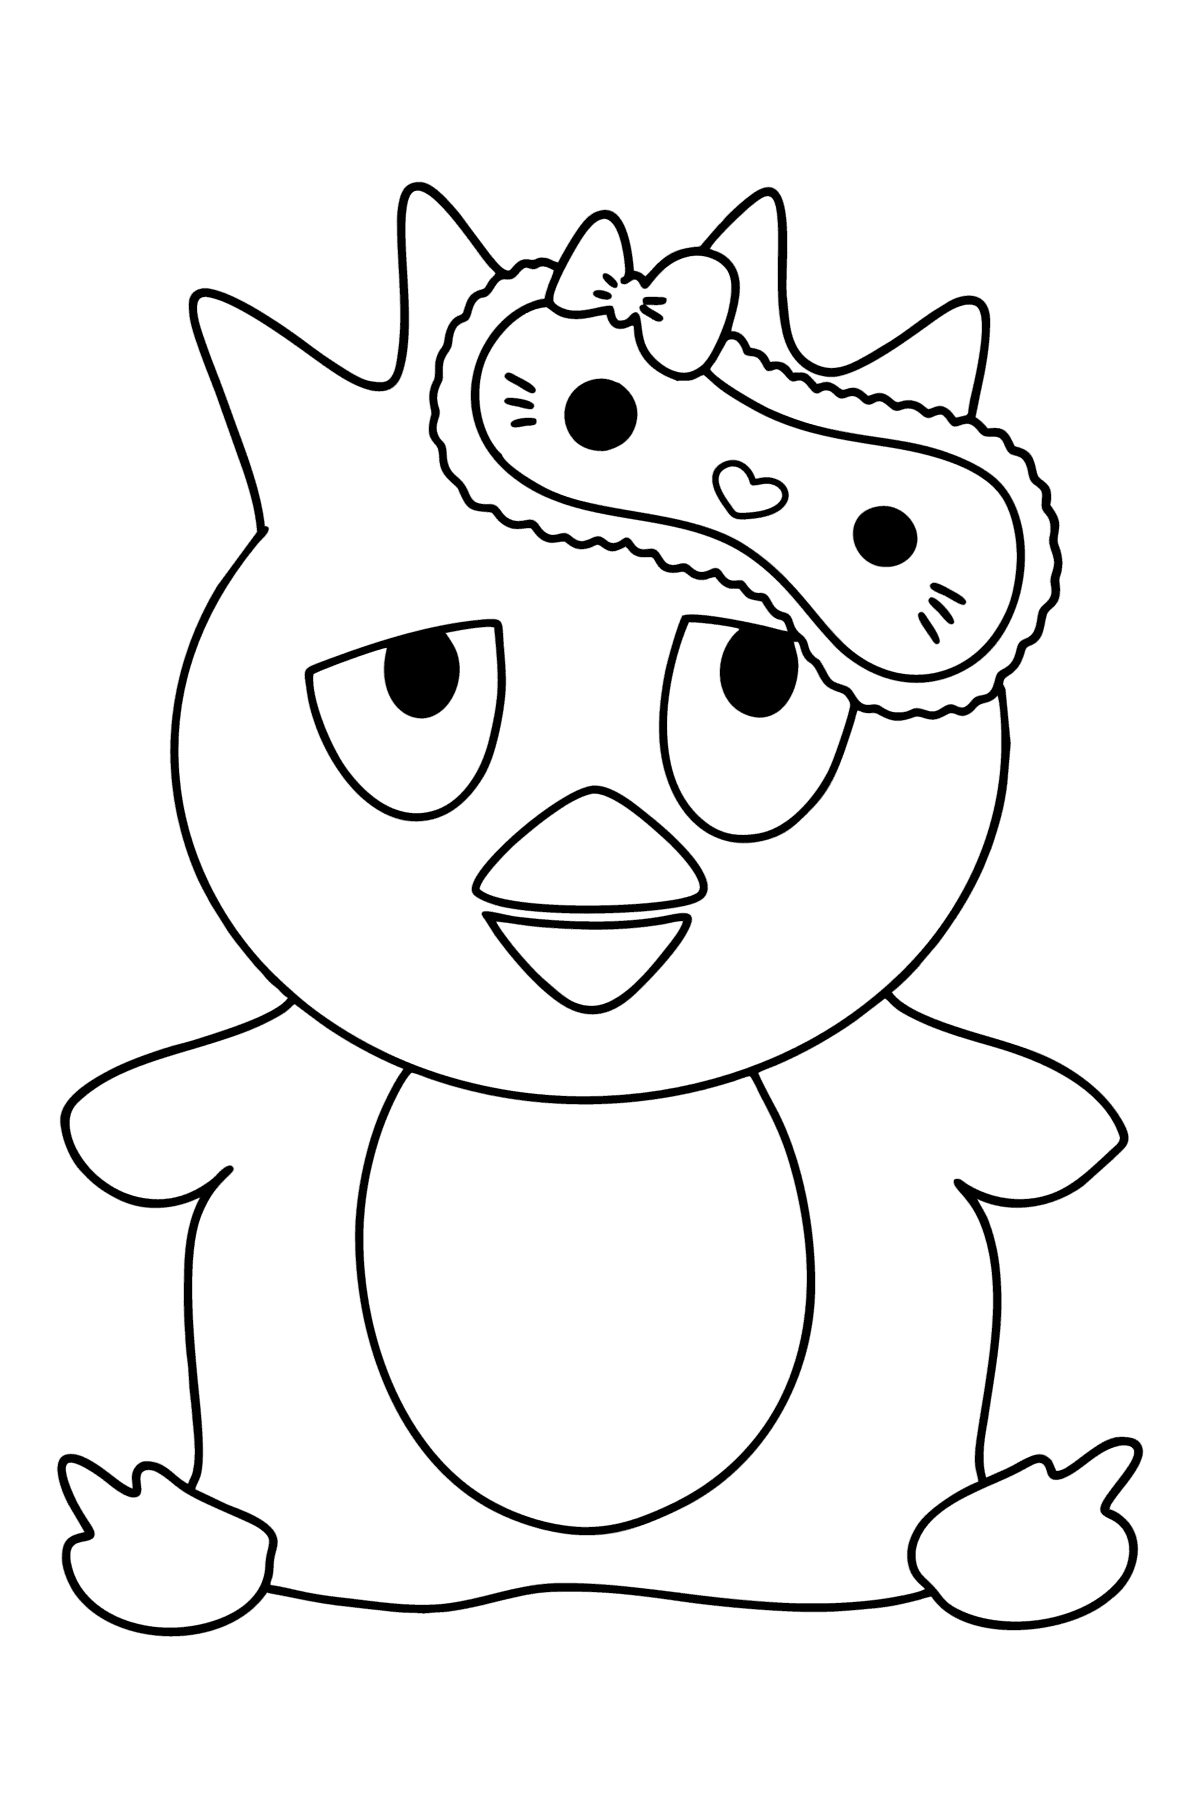 Ausmalbild Hello Kitty Badtz Maru - Malvorlagen für Kinder